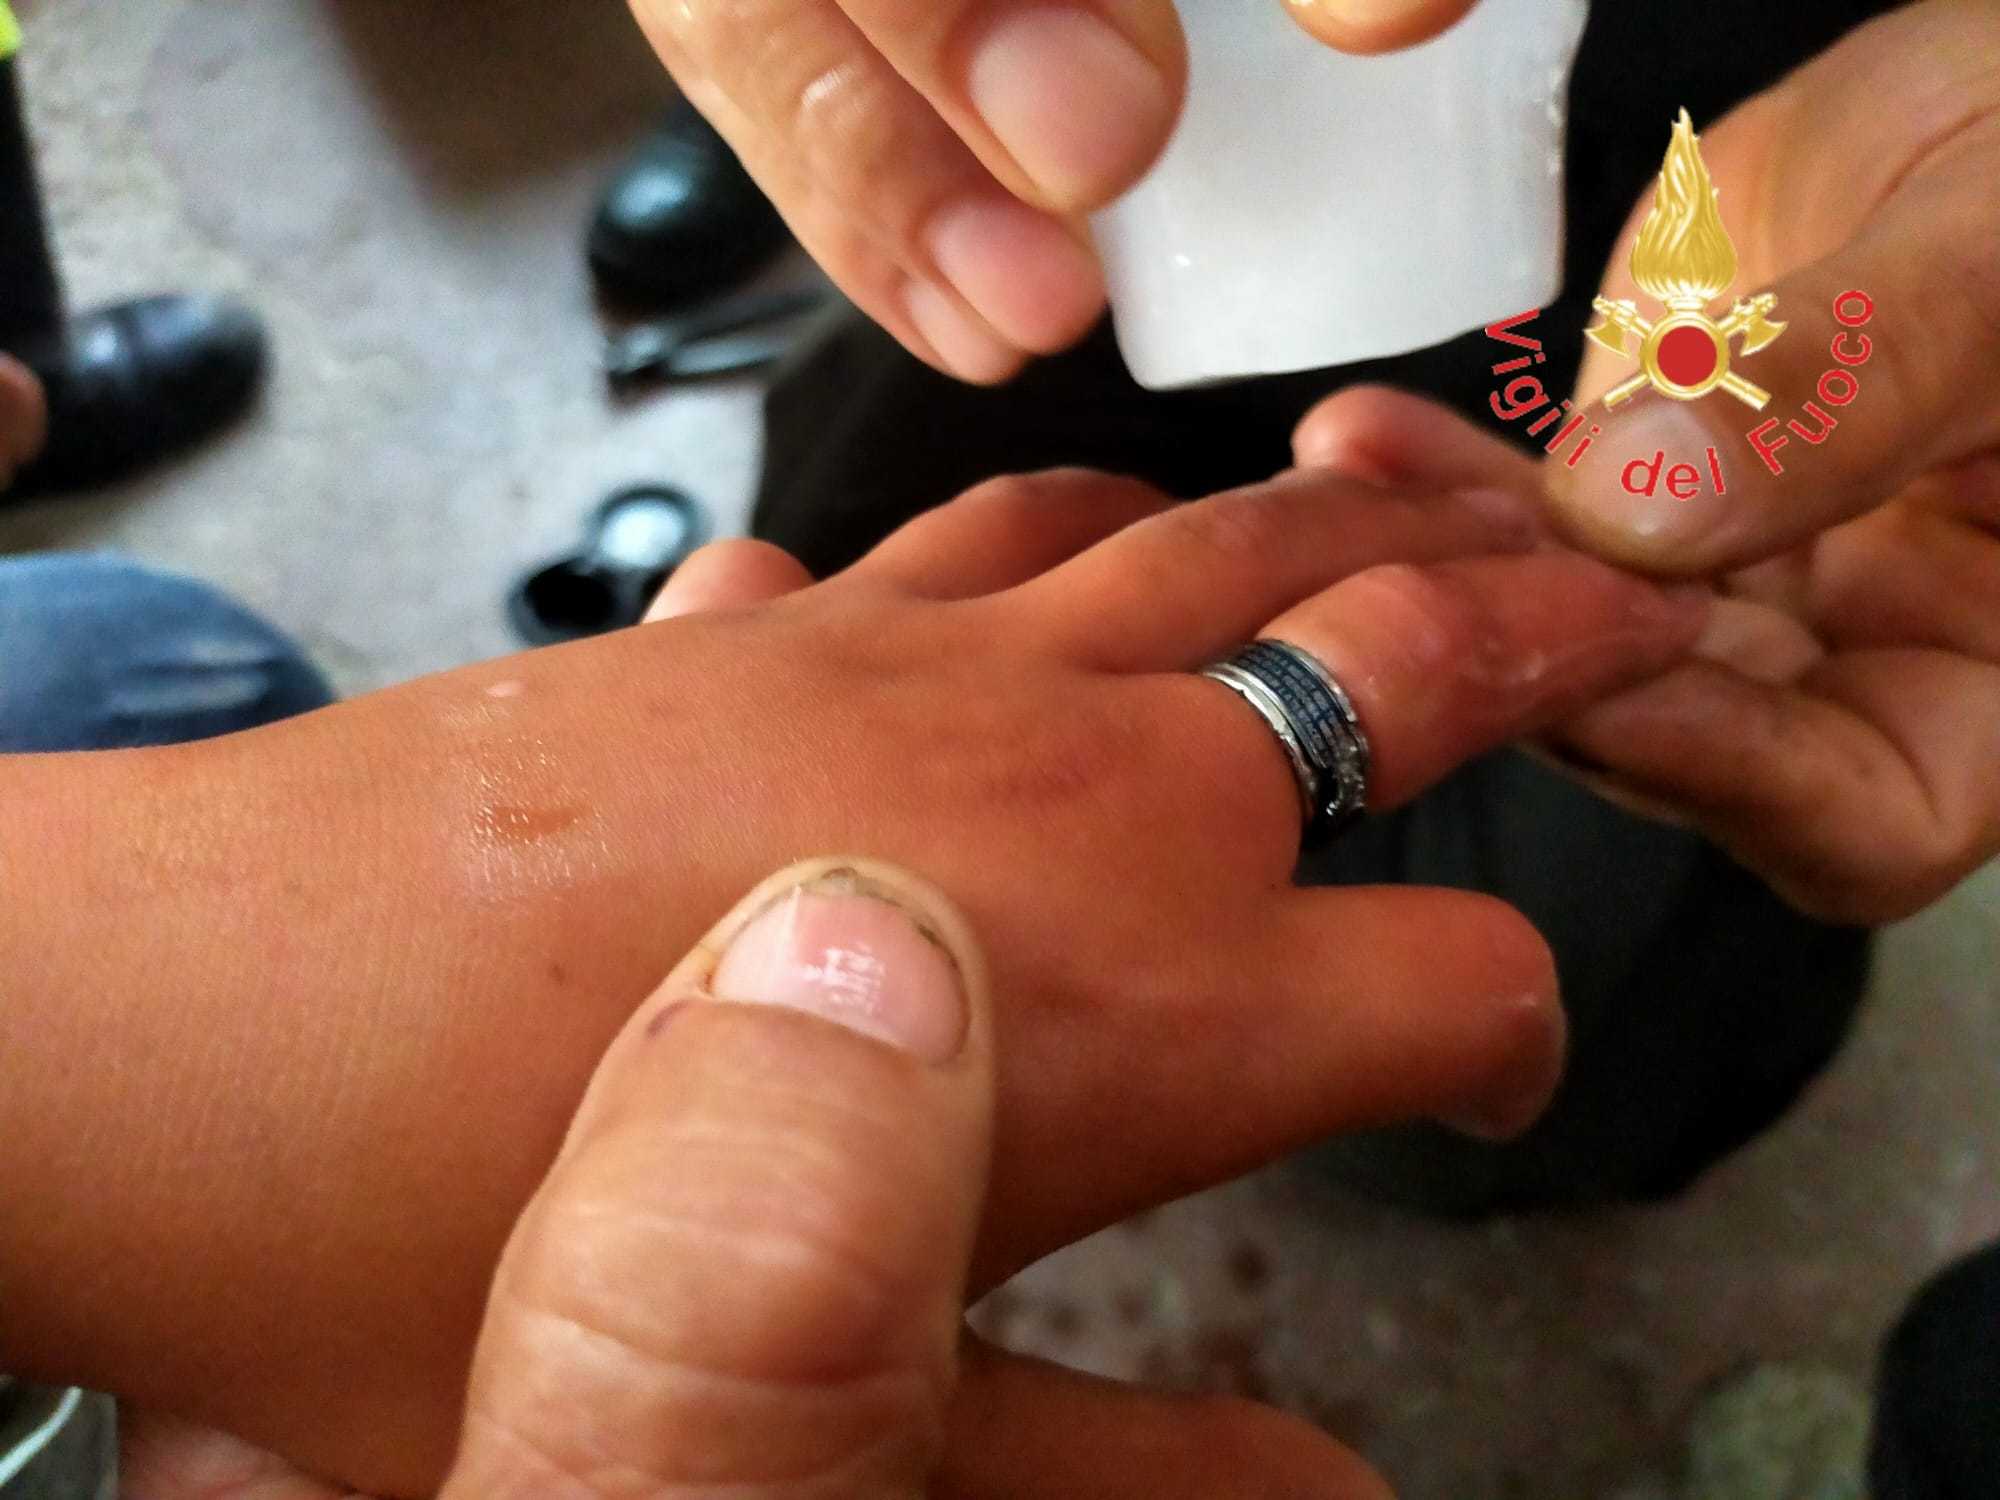 Bambino con anello incastrato in un dito: per “sfilarlo” delicatamente intervengono i Vvf. (Foto)